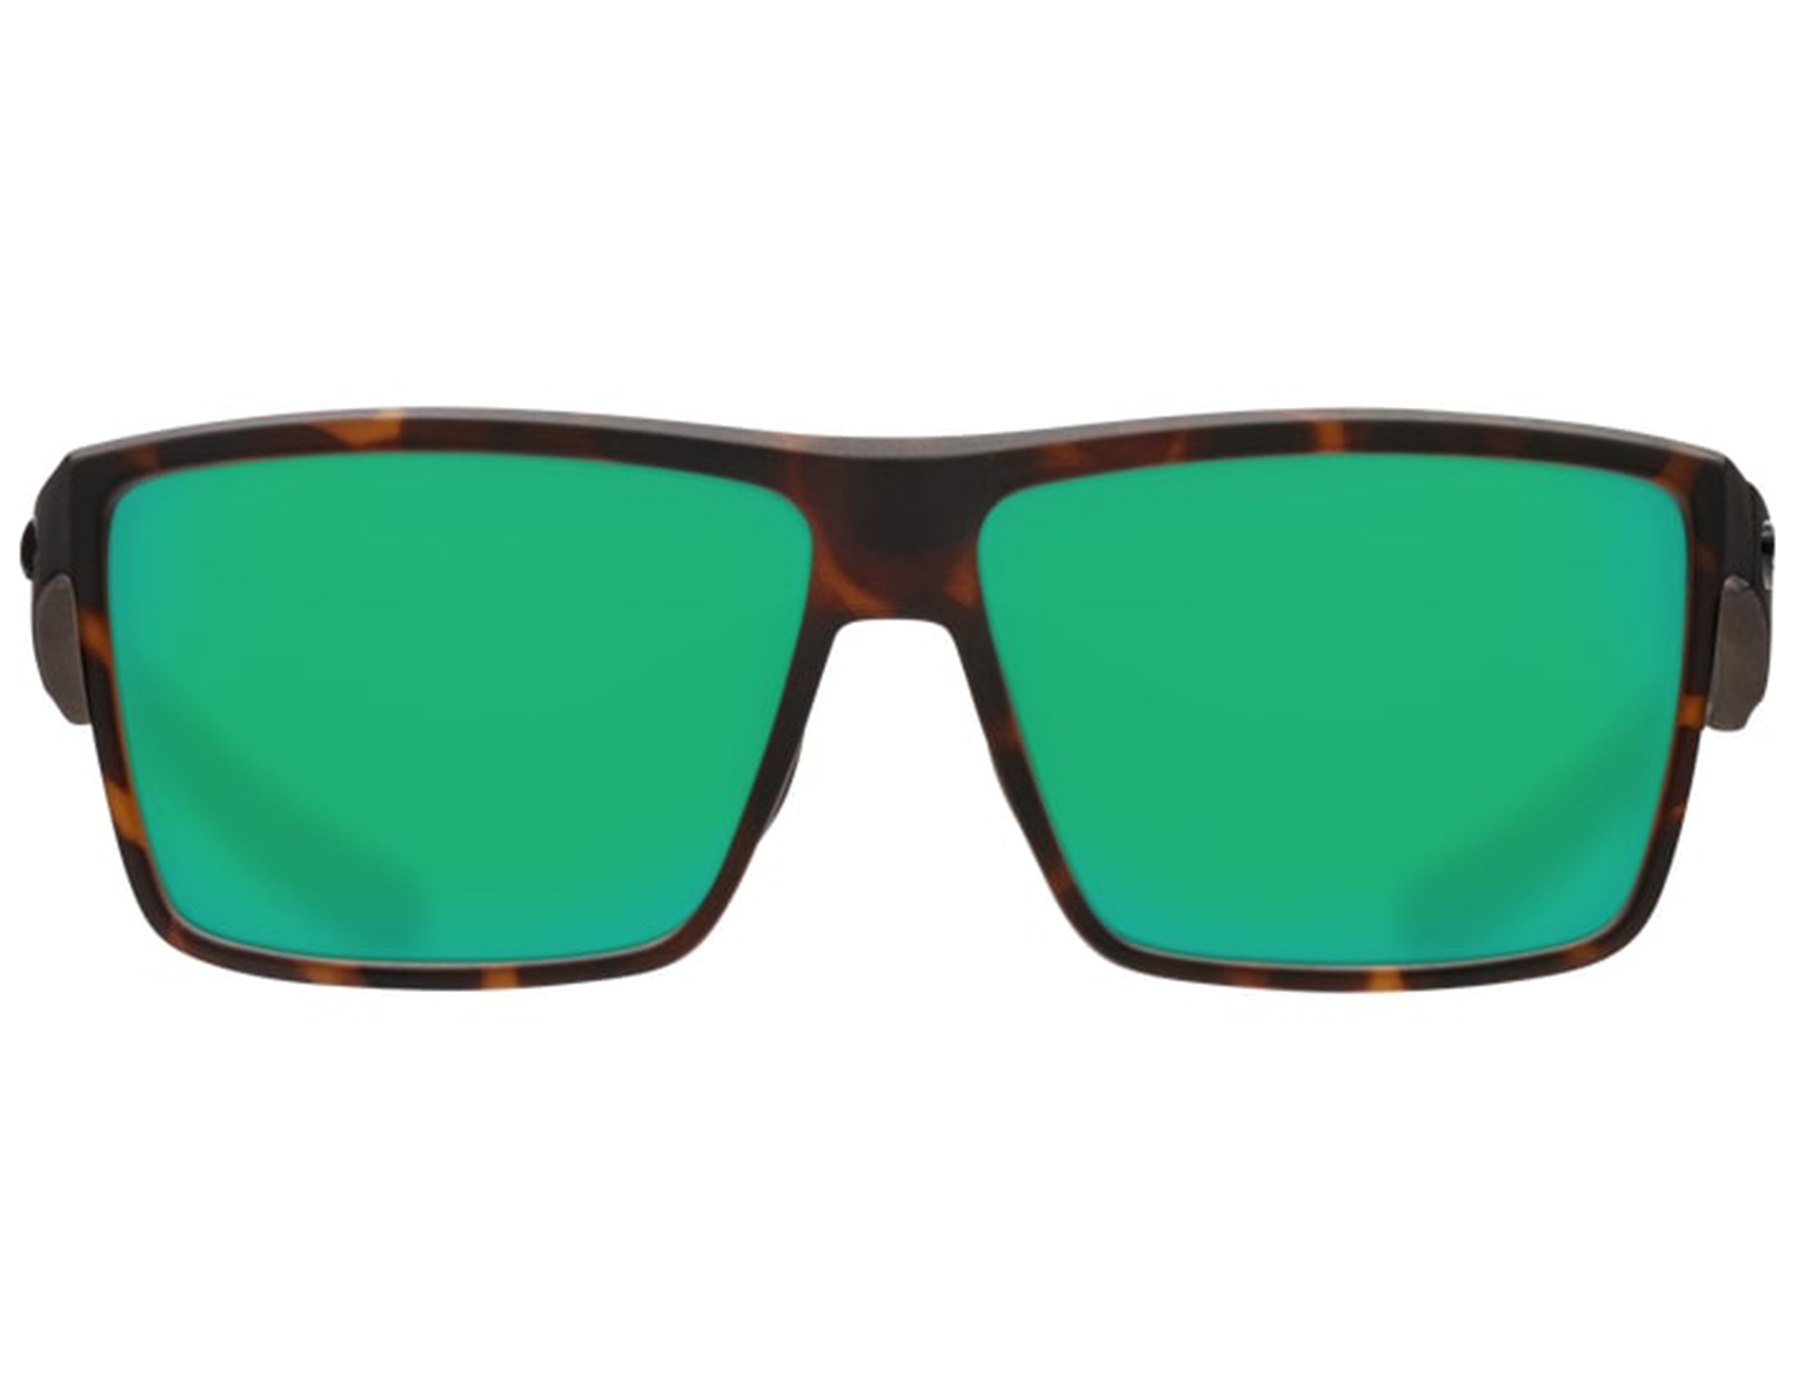 Costa Del Mar Rinconcito Sunglasses, Matte Tortoise, Green Mirror, 580P - image 3 of 4